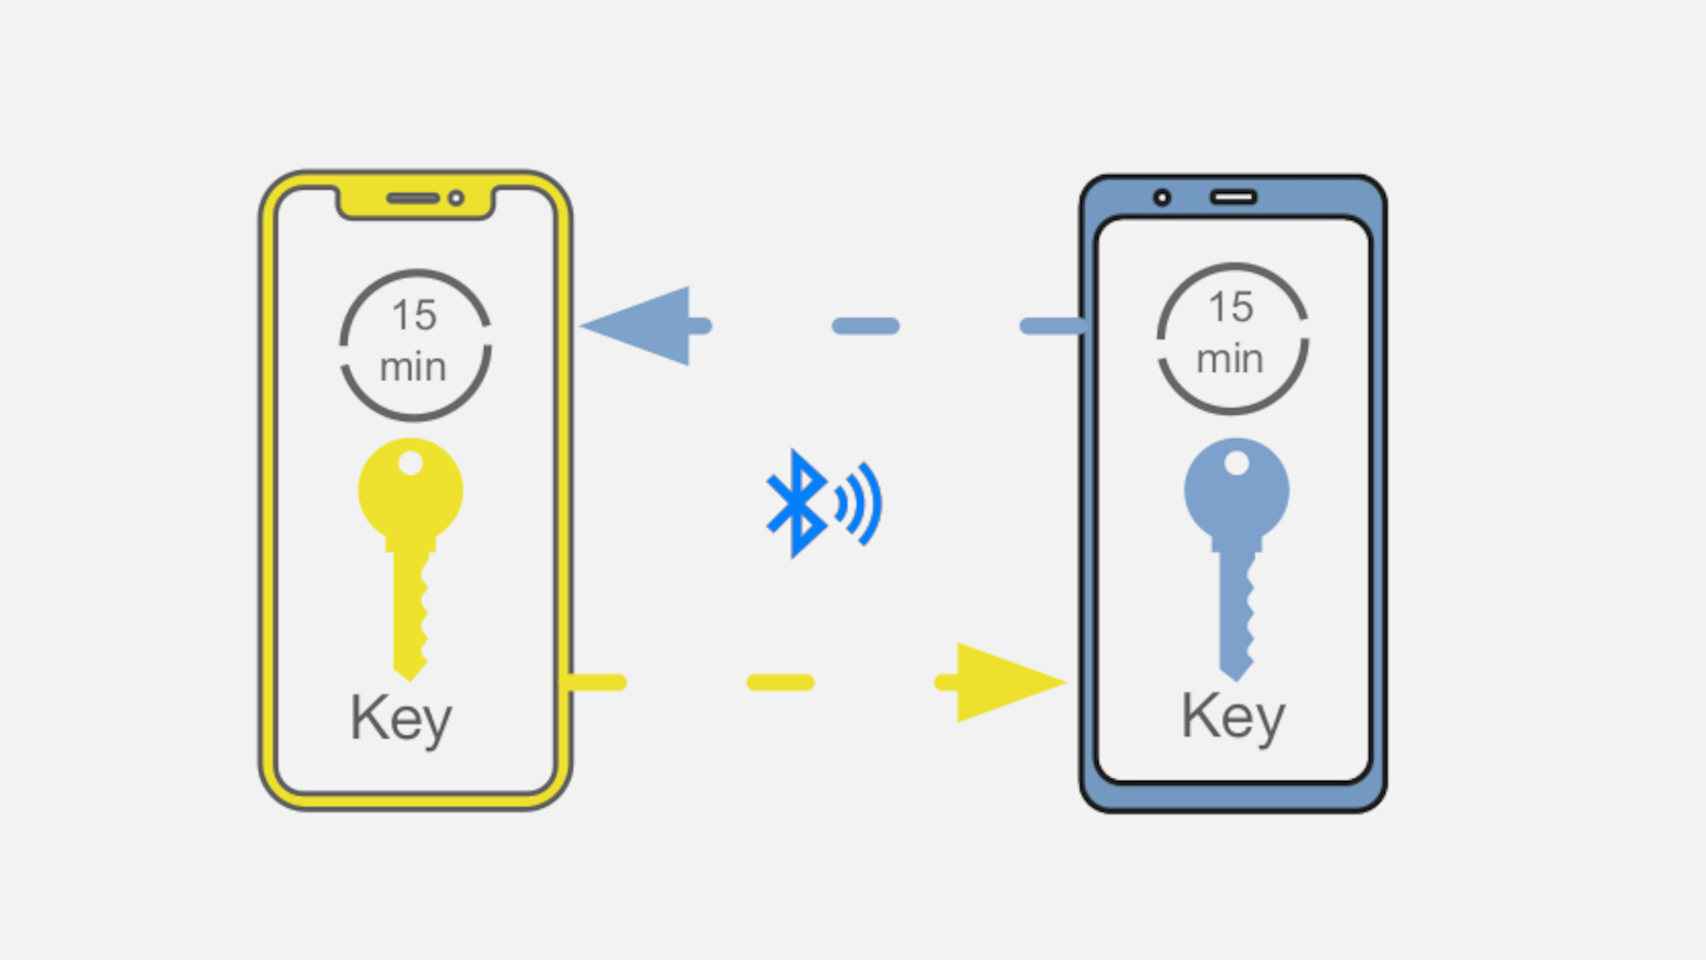 Estas apps se basan en compartir claves con la conexión Bluetooth